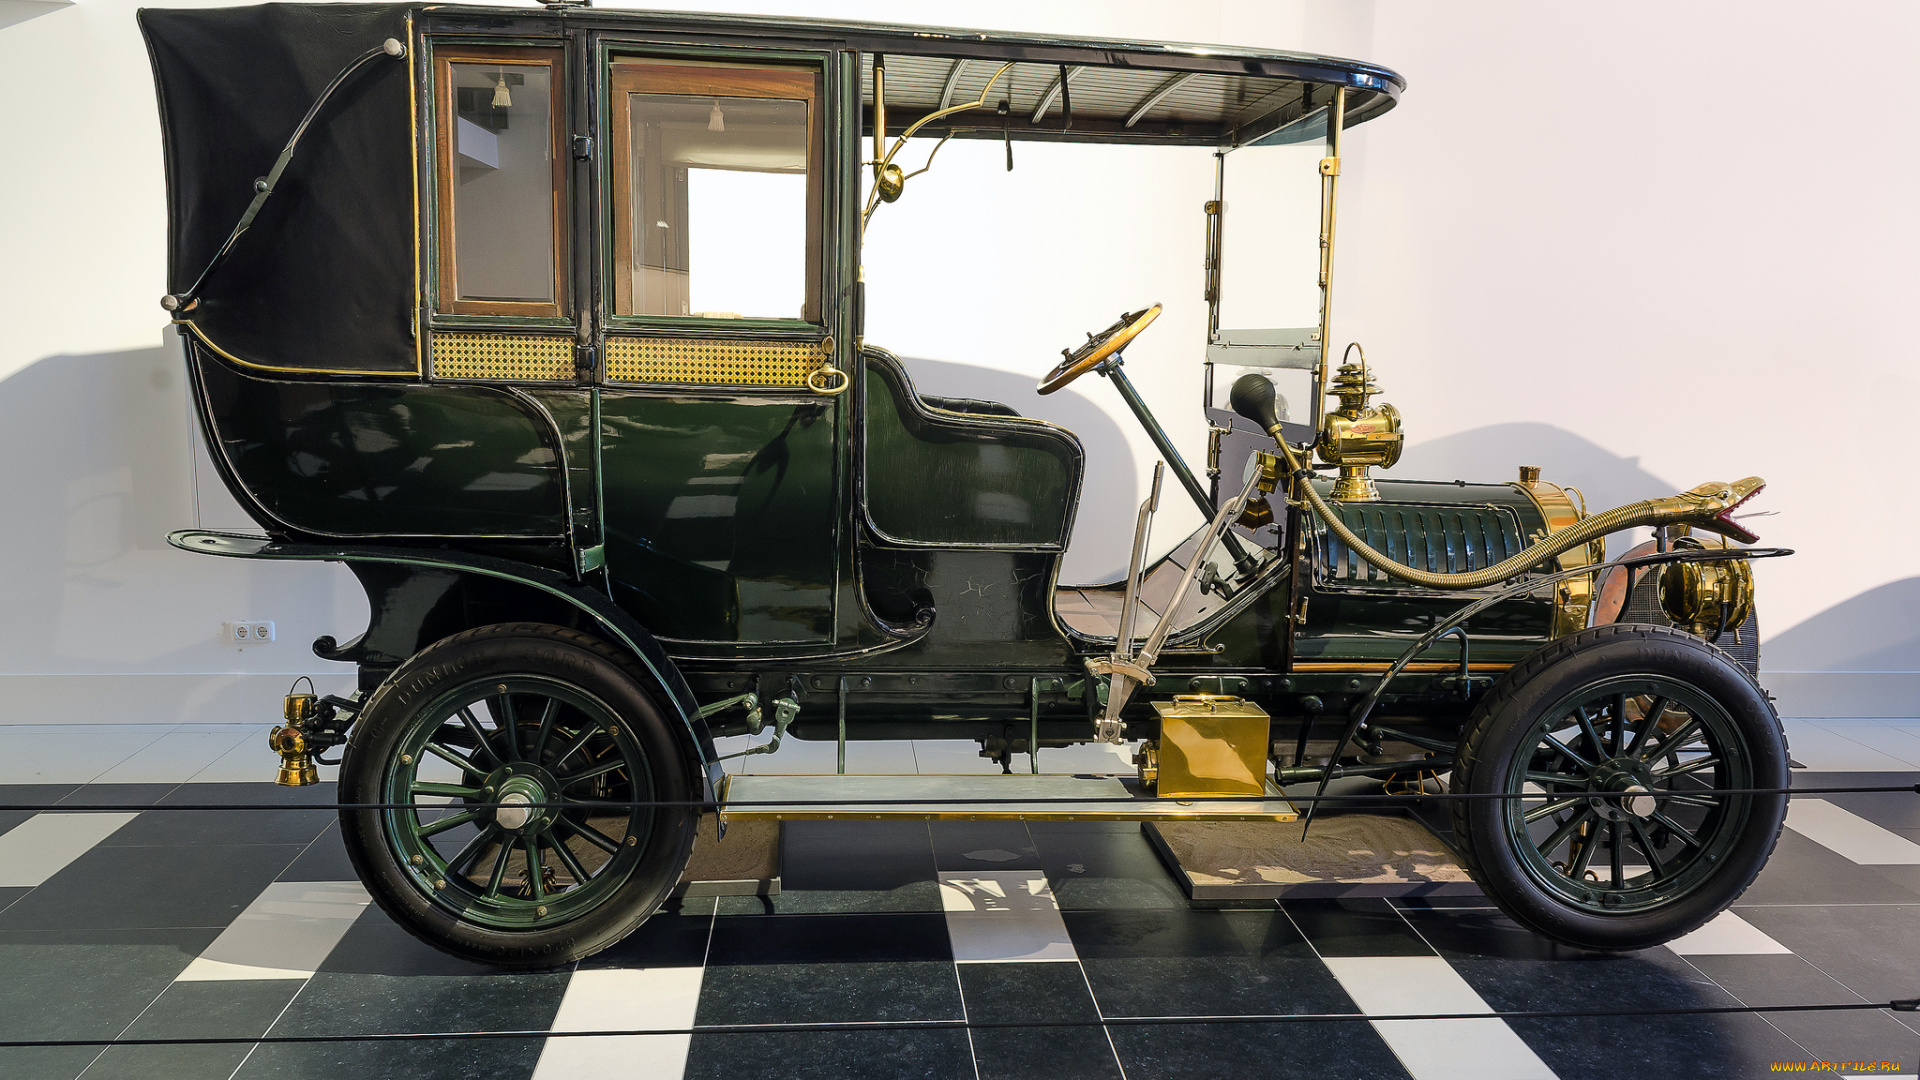 spyker, 1522-hp, three-quarter, landaulette, 1907, автомобили, выставки, и, уличные, фото, автошоу, ретро, история, выставка